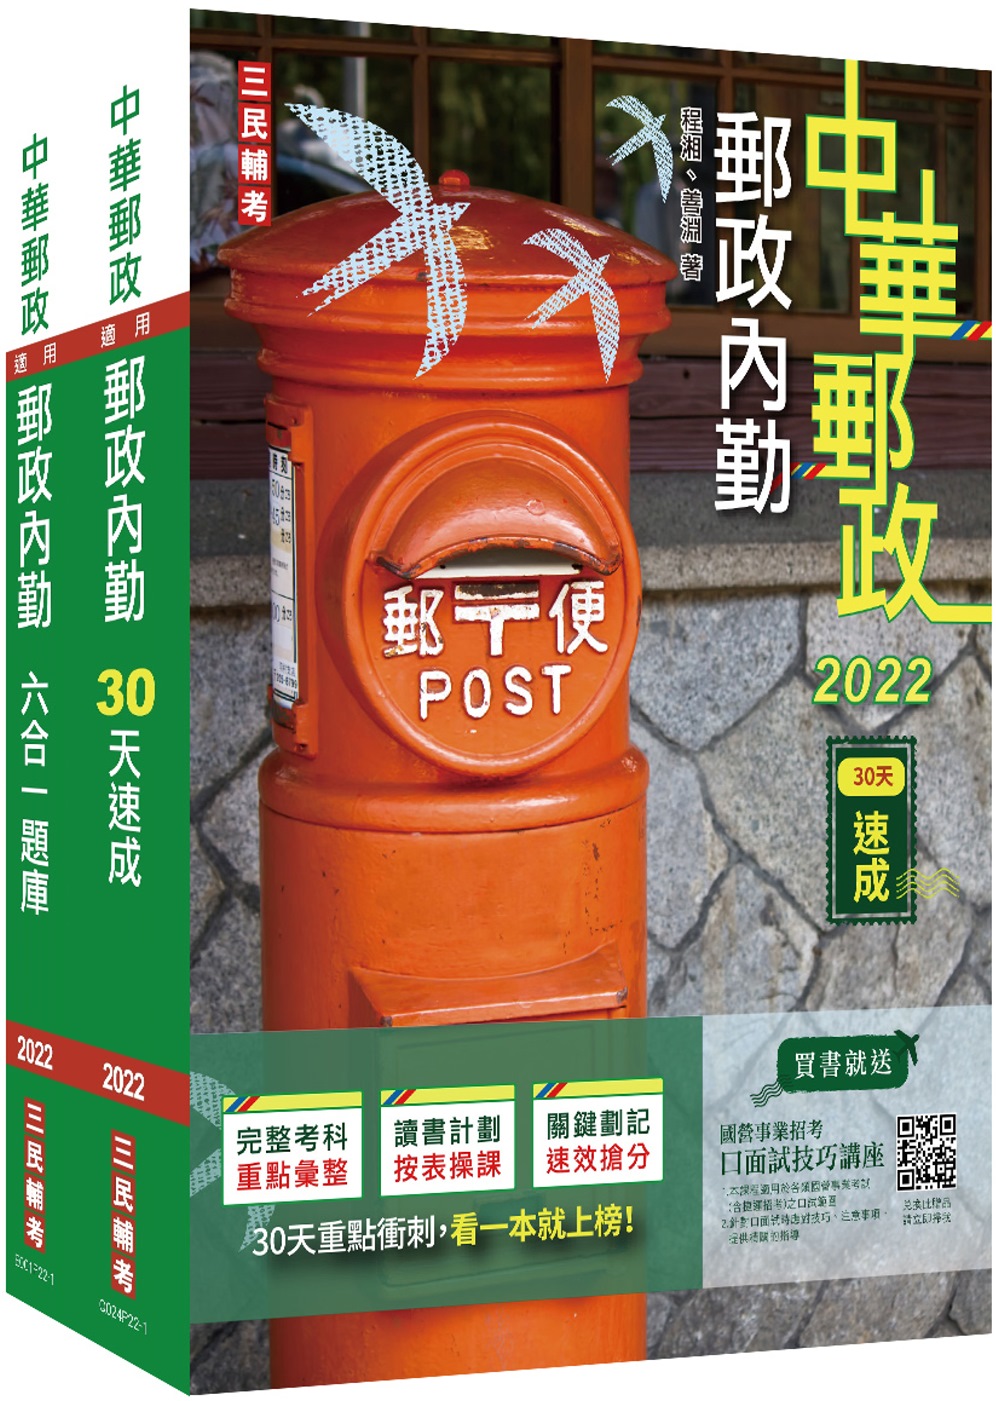 2022郵政(郵局)[內勤人員][速成+題庫]套書(中華郵政專業職二內勤適用)(贈郵政內勤小法典)